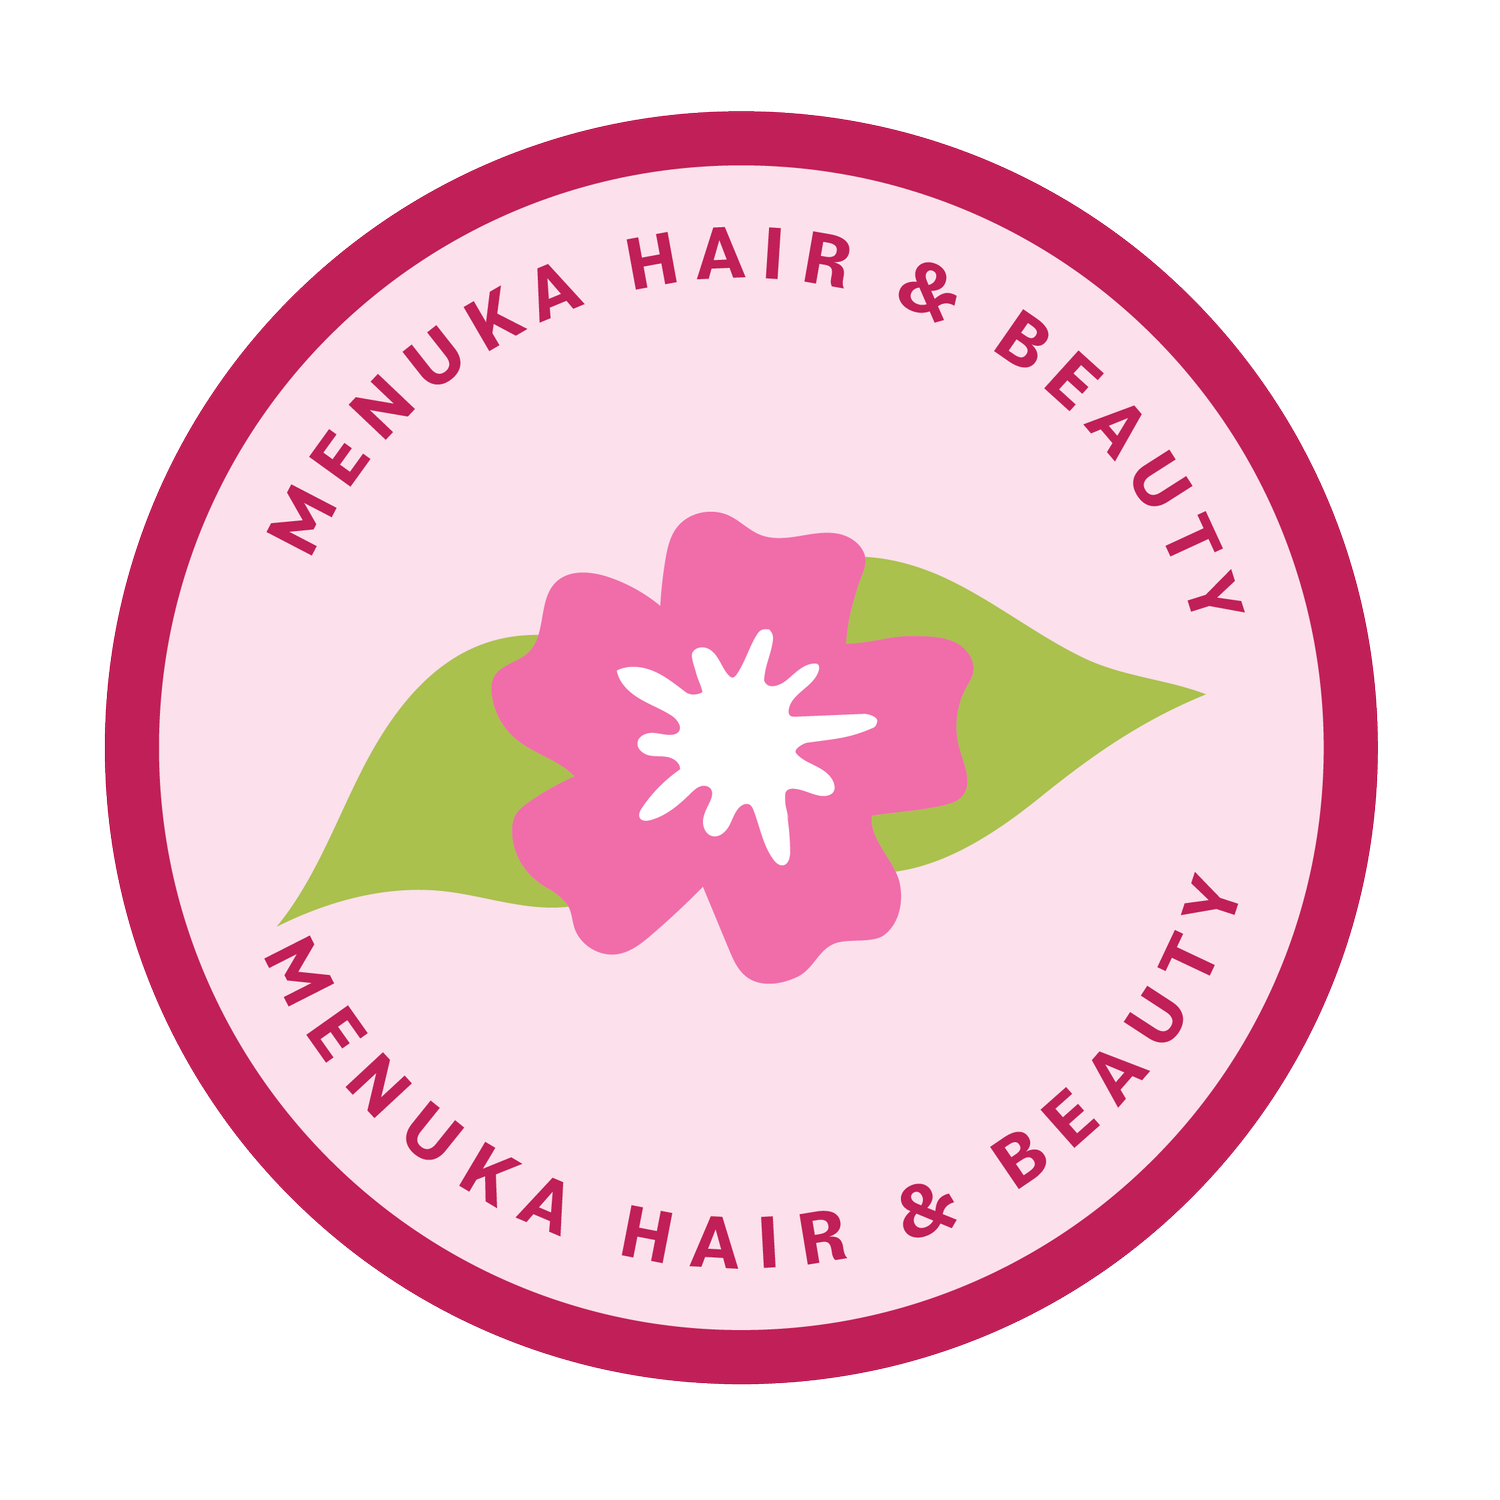 Meunka Hair and Beauty, Auckland